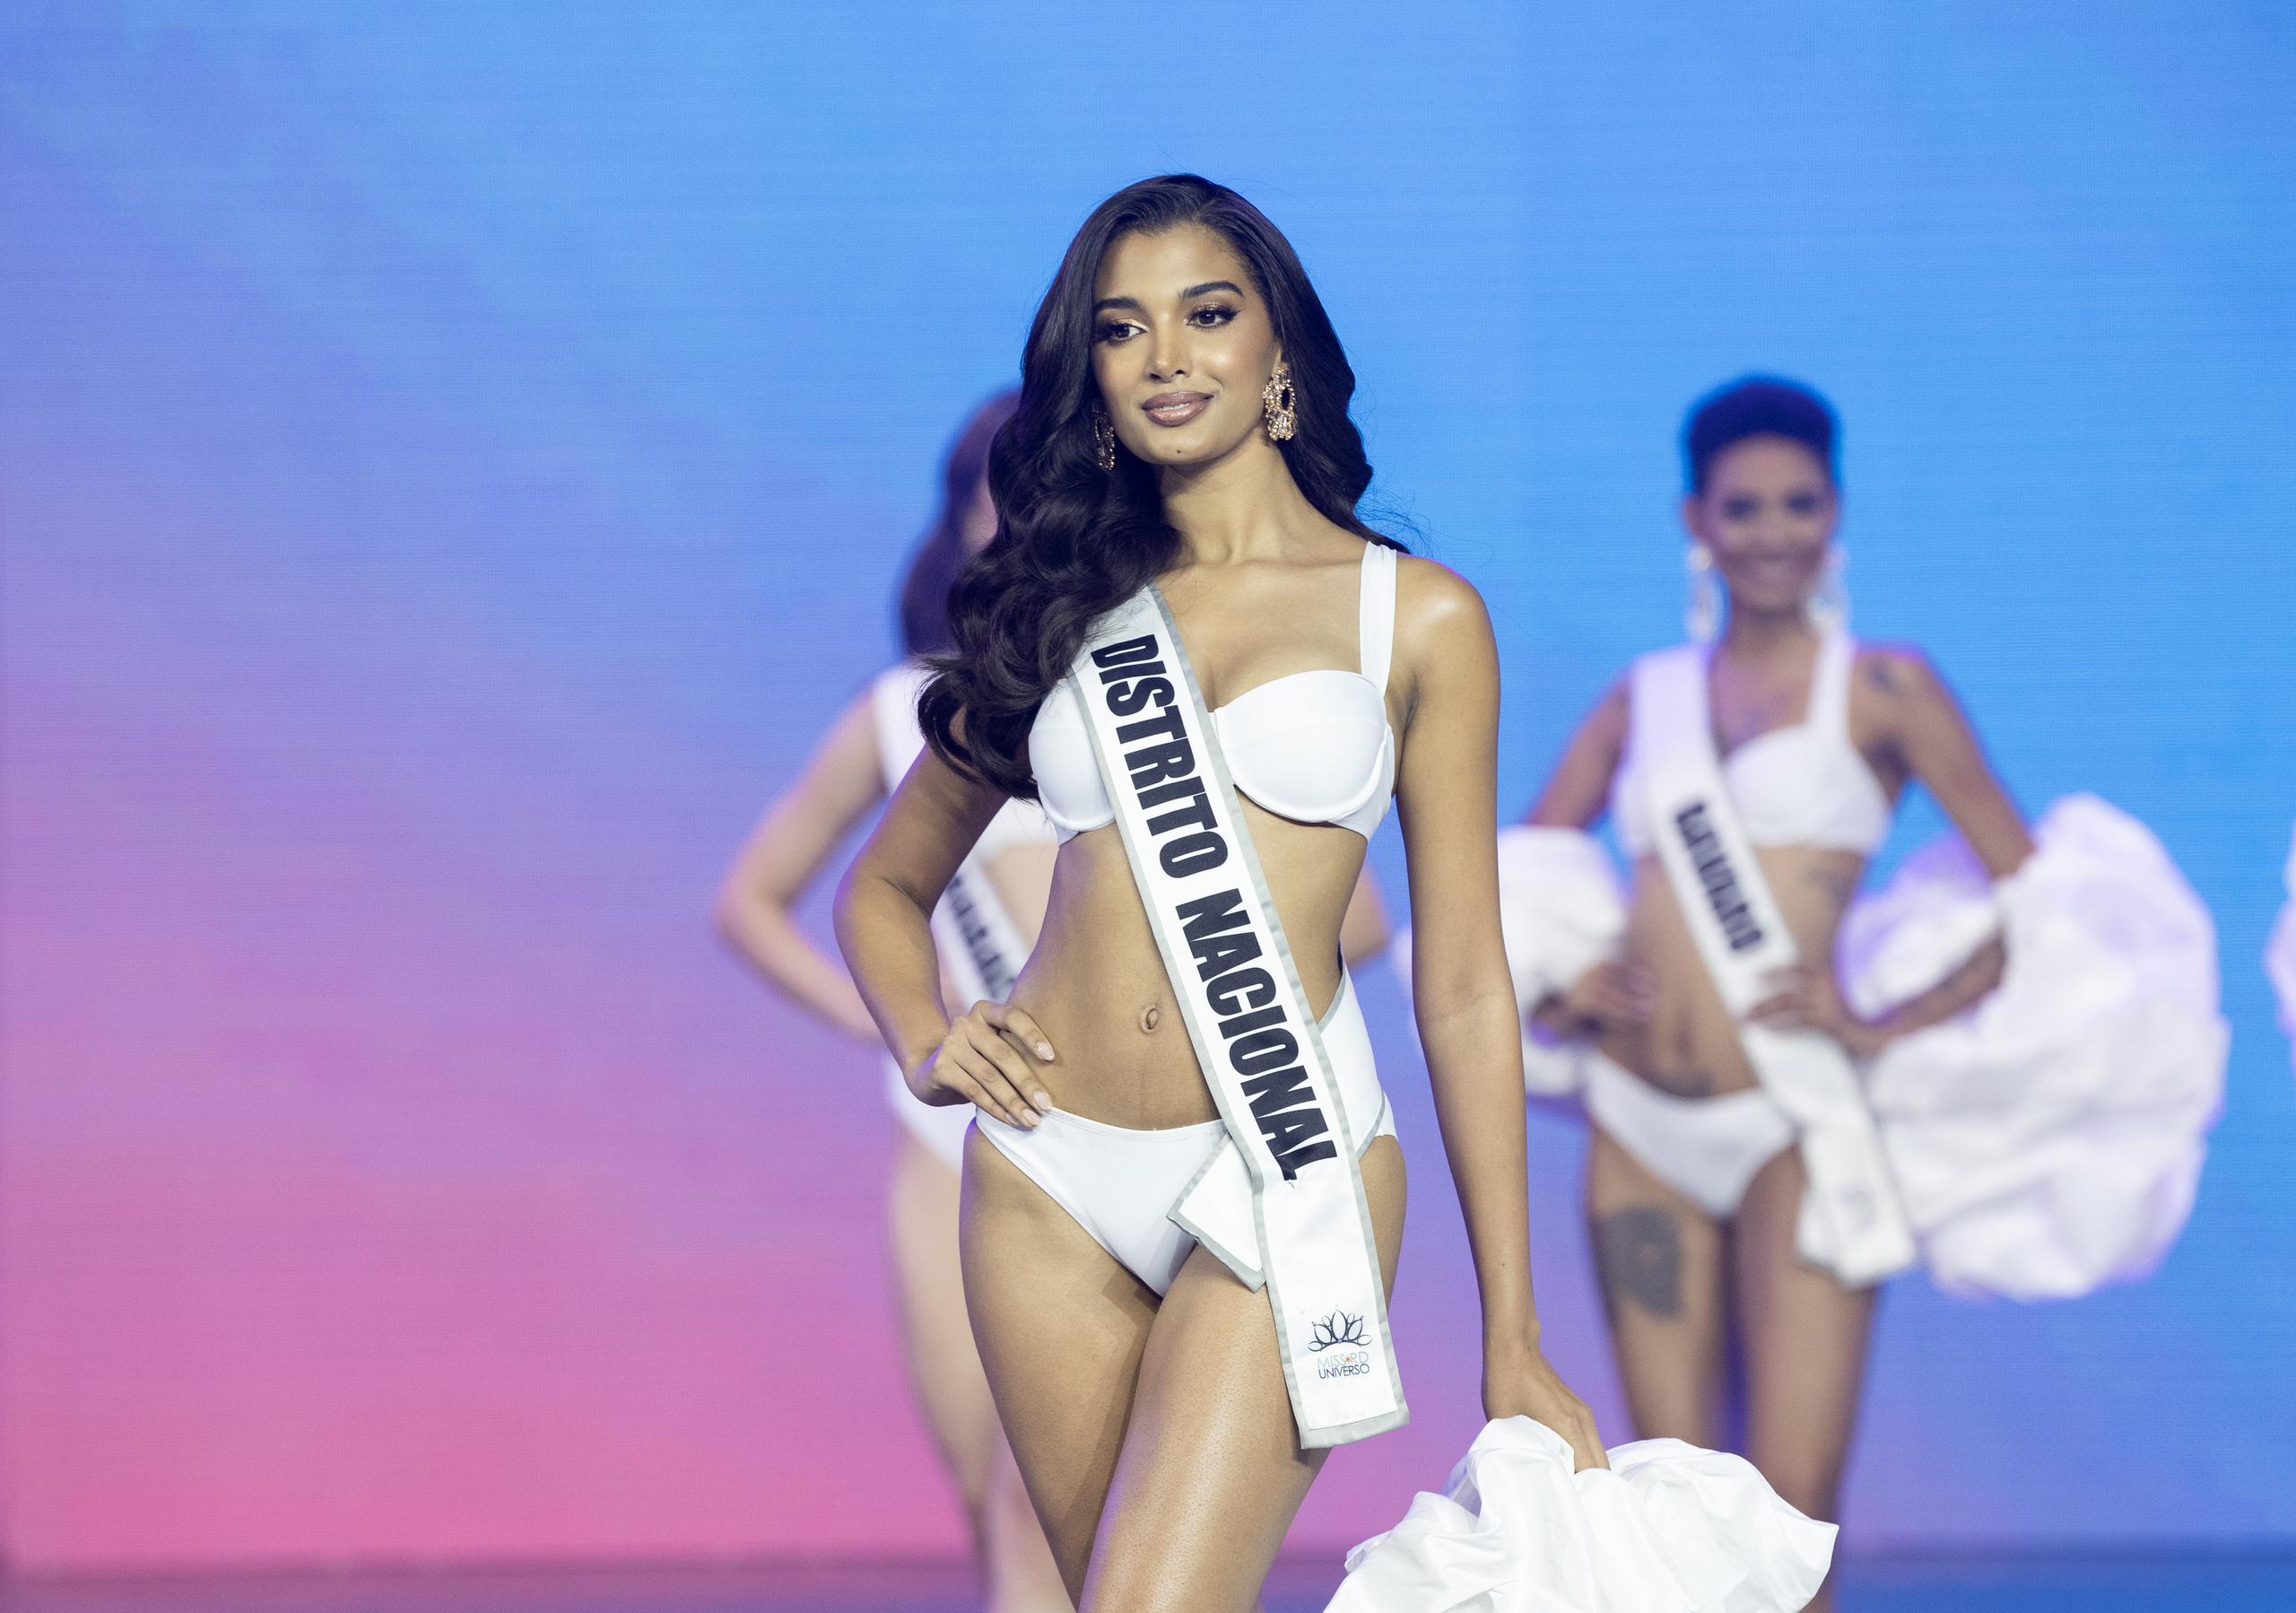 Celinee Santos, candidata del Distrito Nacional y de 24 años, fue elegida como nueva Miss República Dominicana 2024 después de vencer a 17 concursantes.